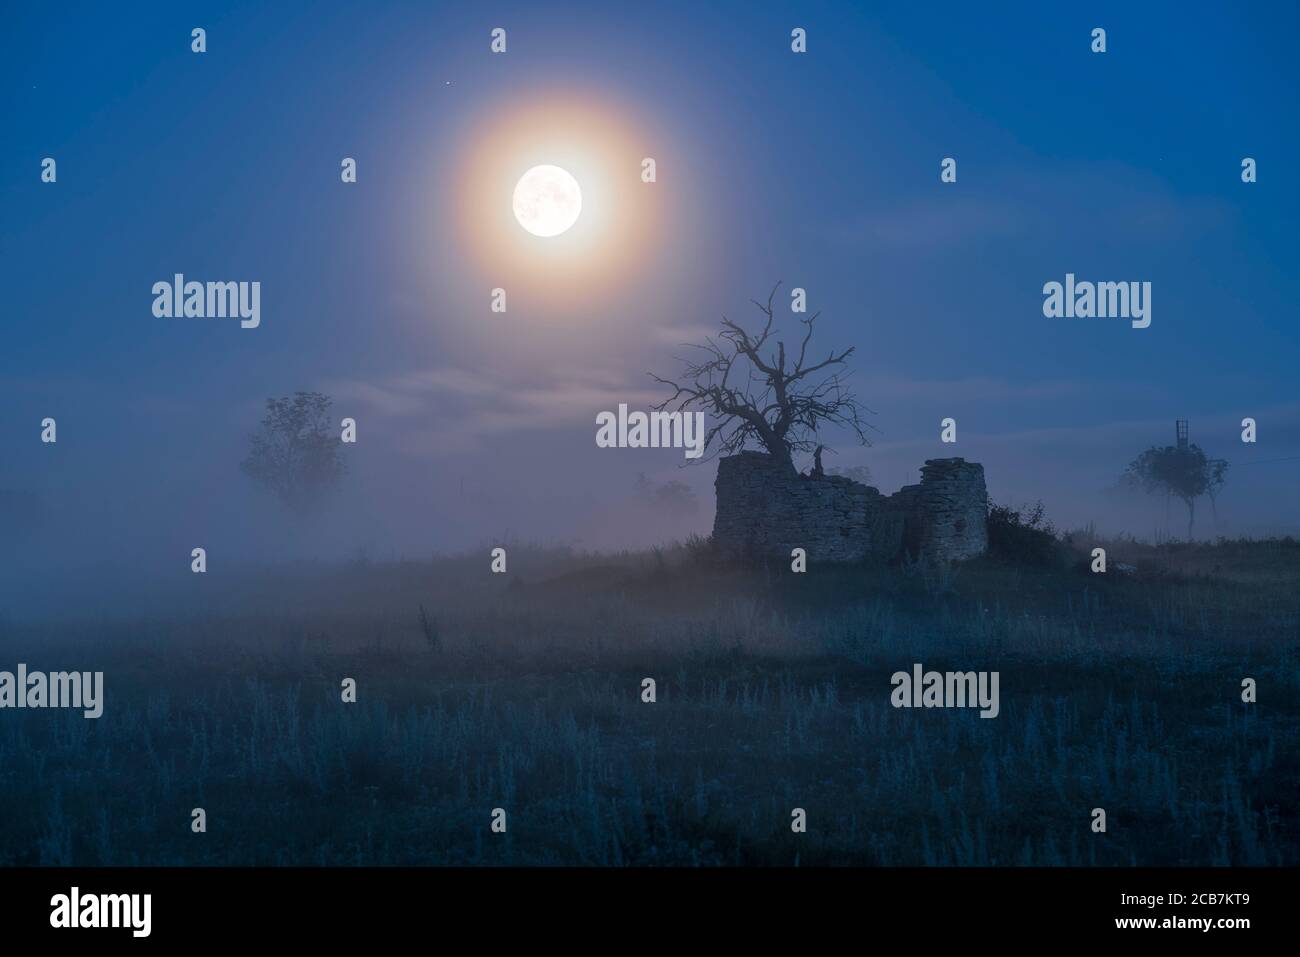 Pleine lune clair de lune sur arbre mort à l'intérieur des ruines d'un vieux moulin à vent dans le paysage rural et le brouillard, Gotland, Suède, Scandinavie. Banque D'Images